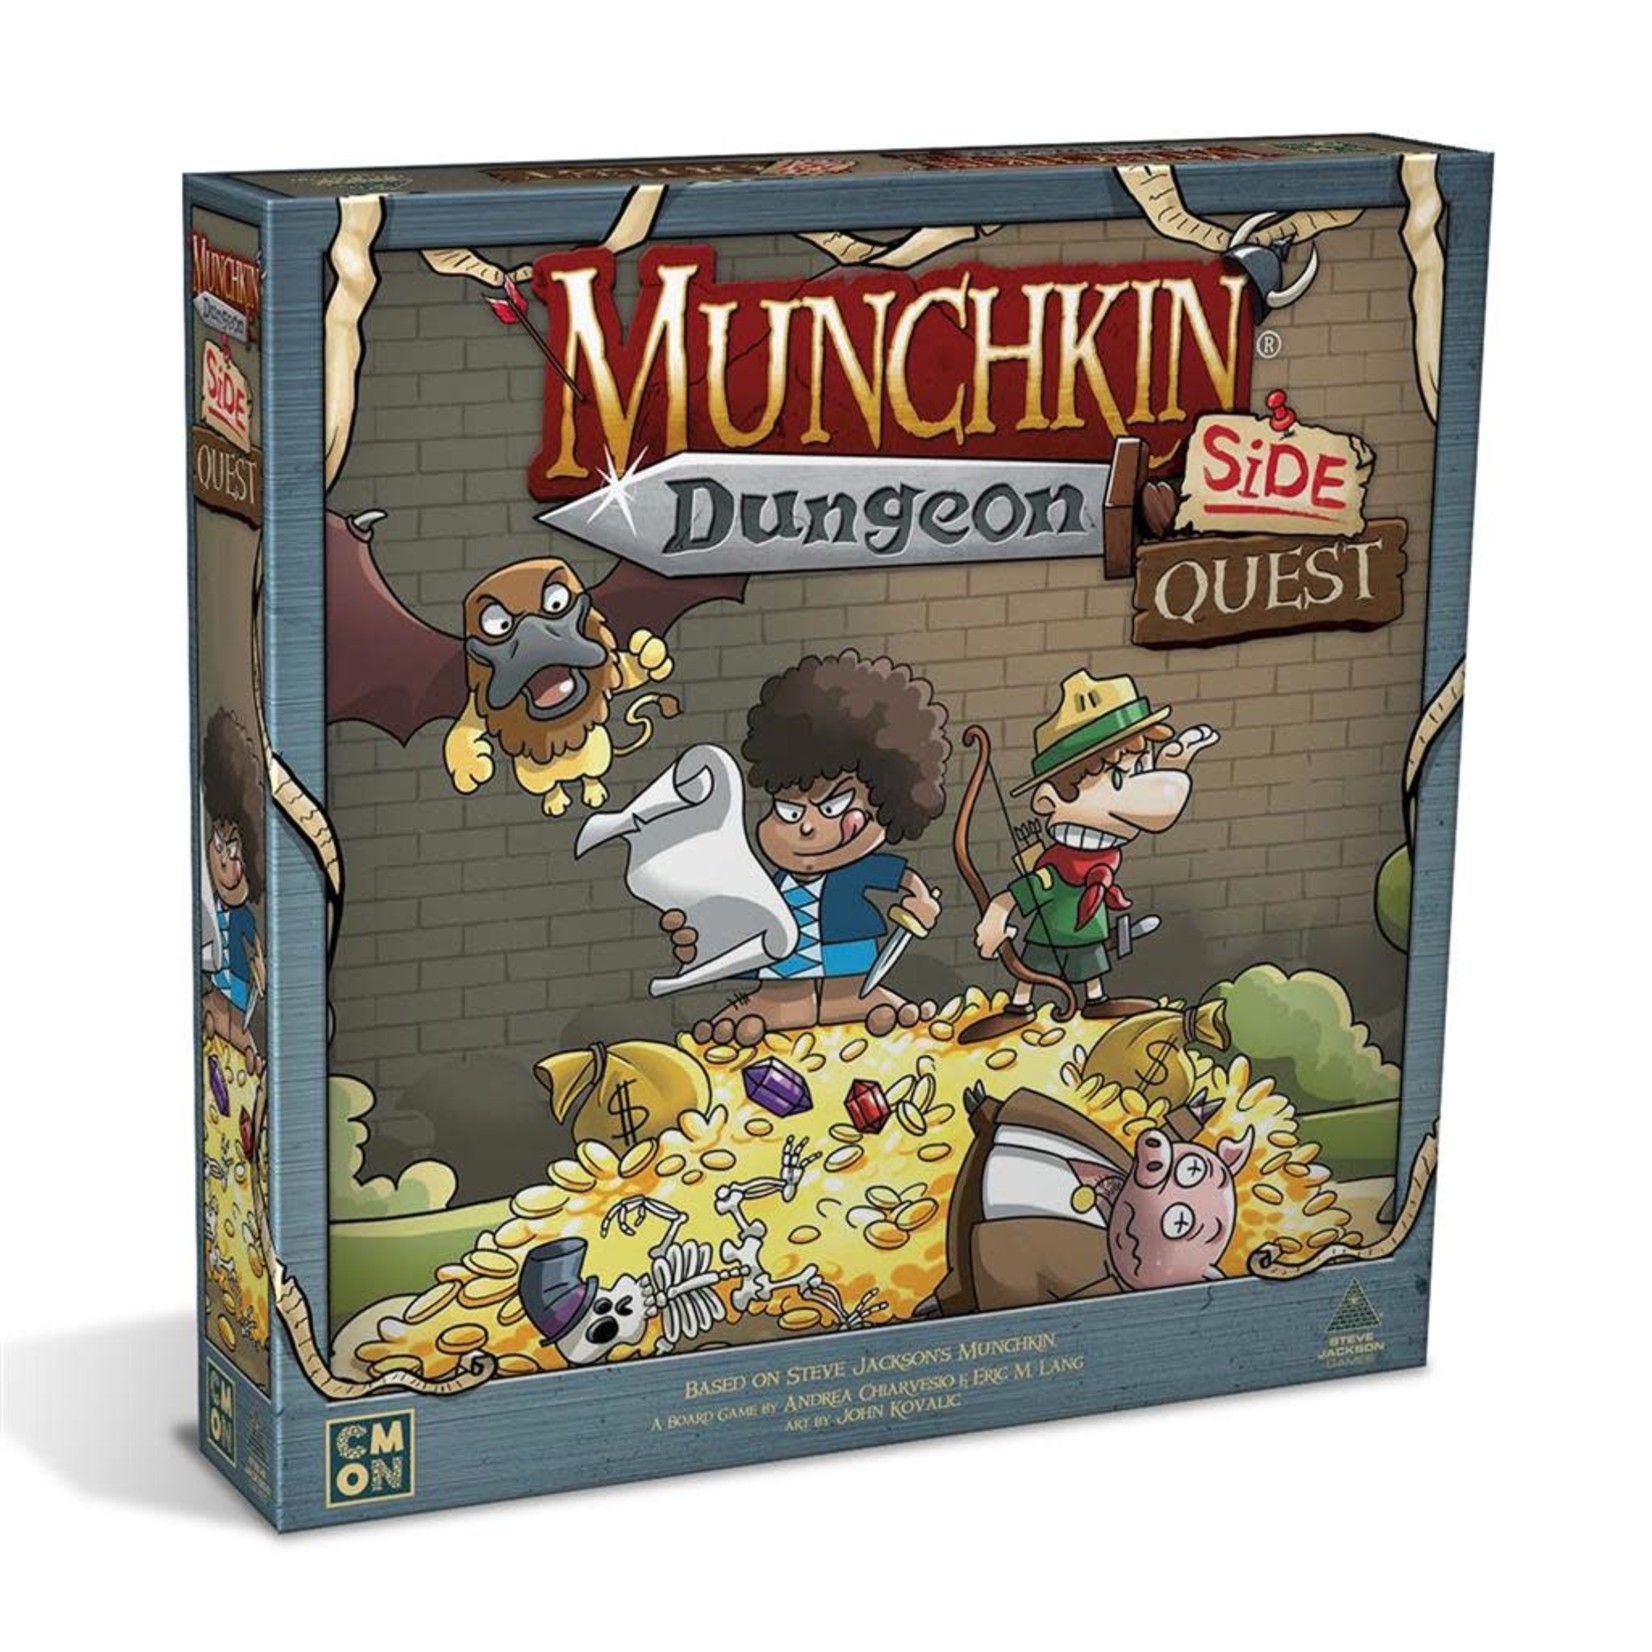 CMON Munchkin Dungeon Side Quest